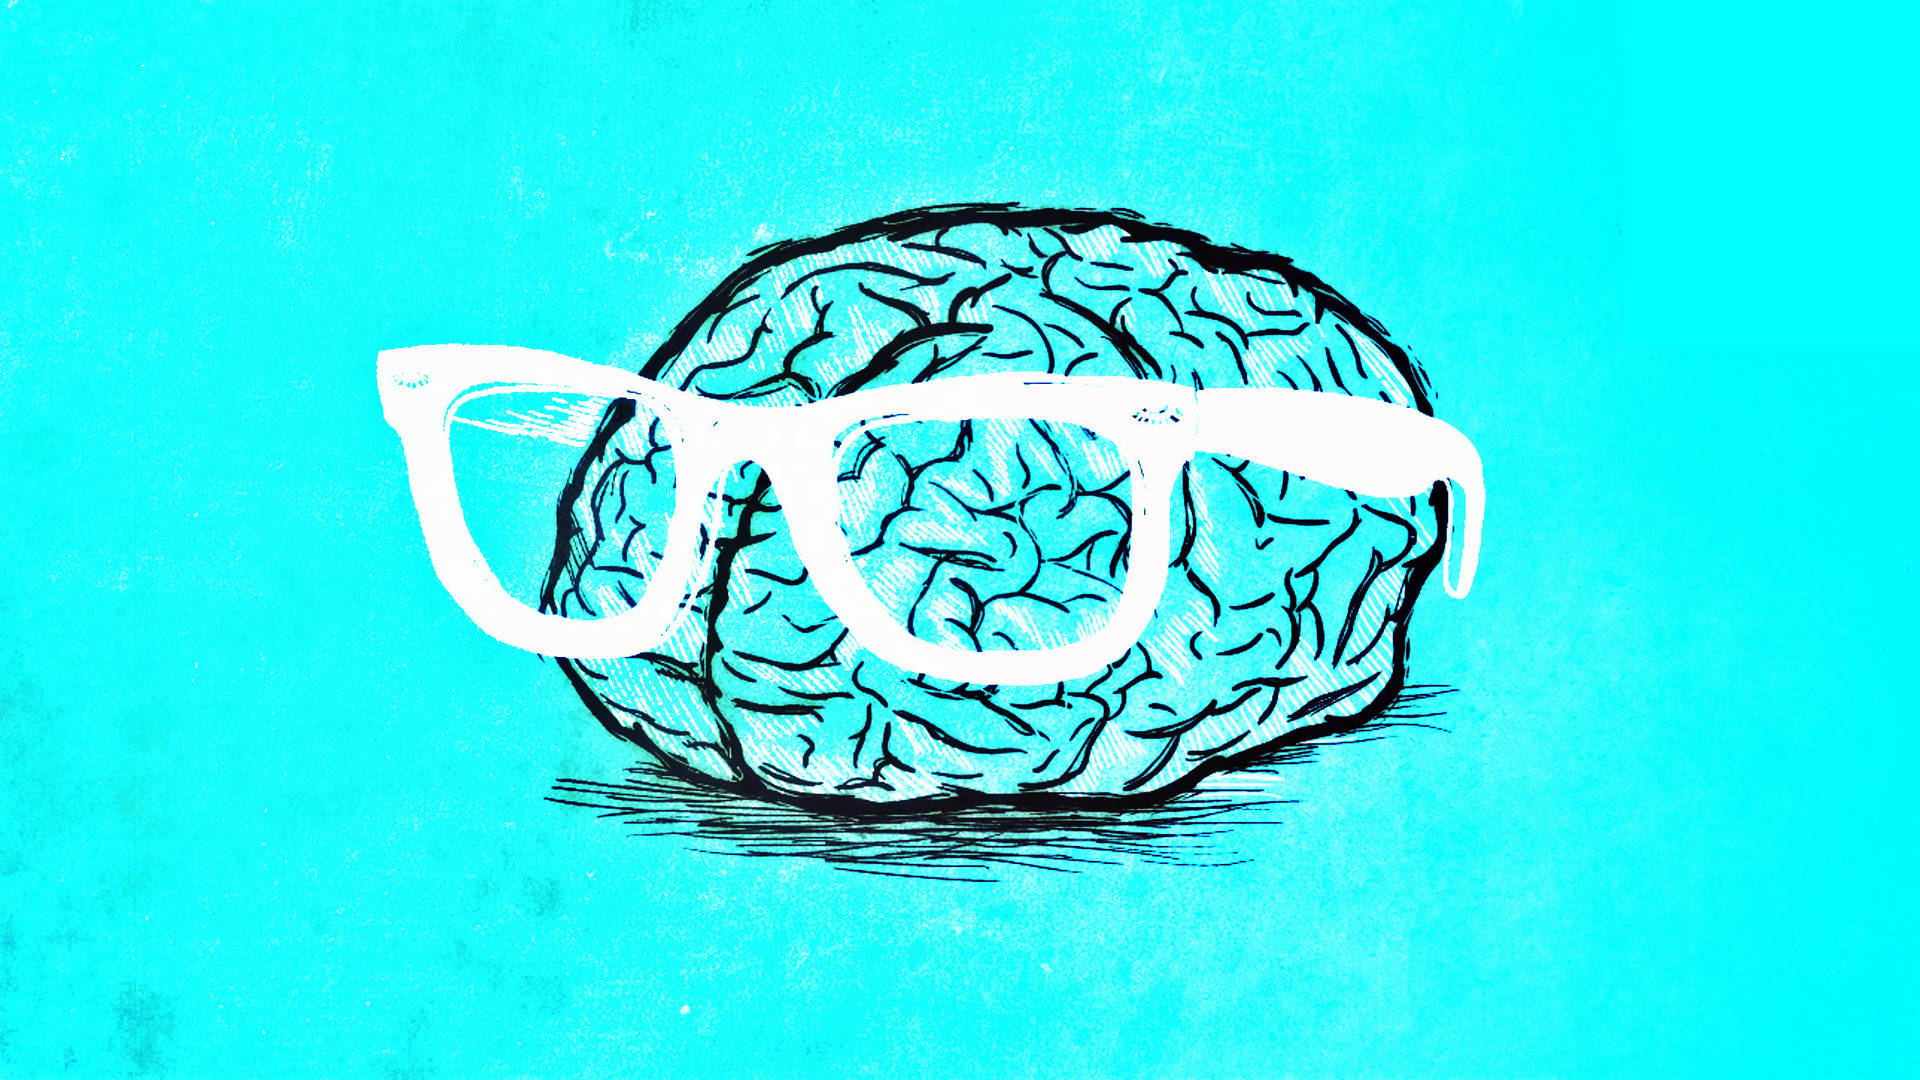 Cerebralercortex Trägt Eine Brille. Wallpaper